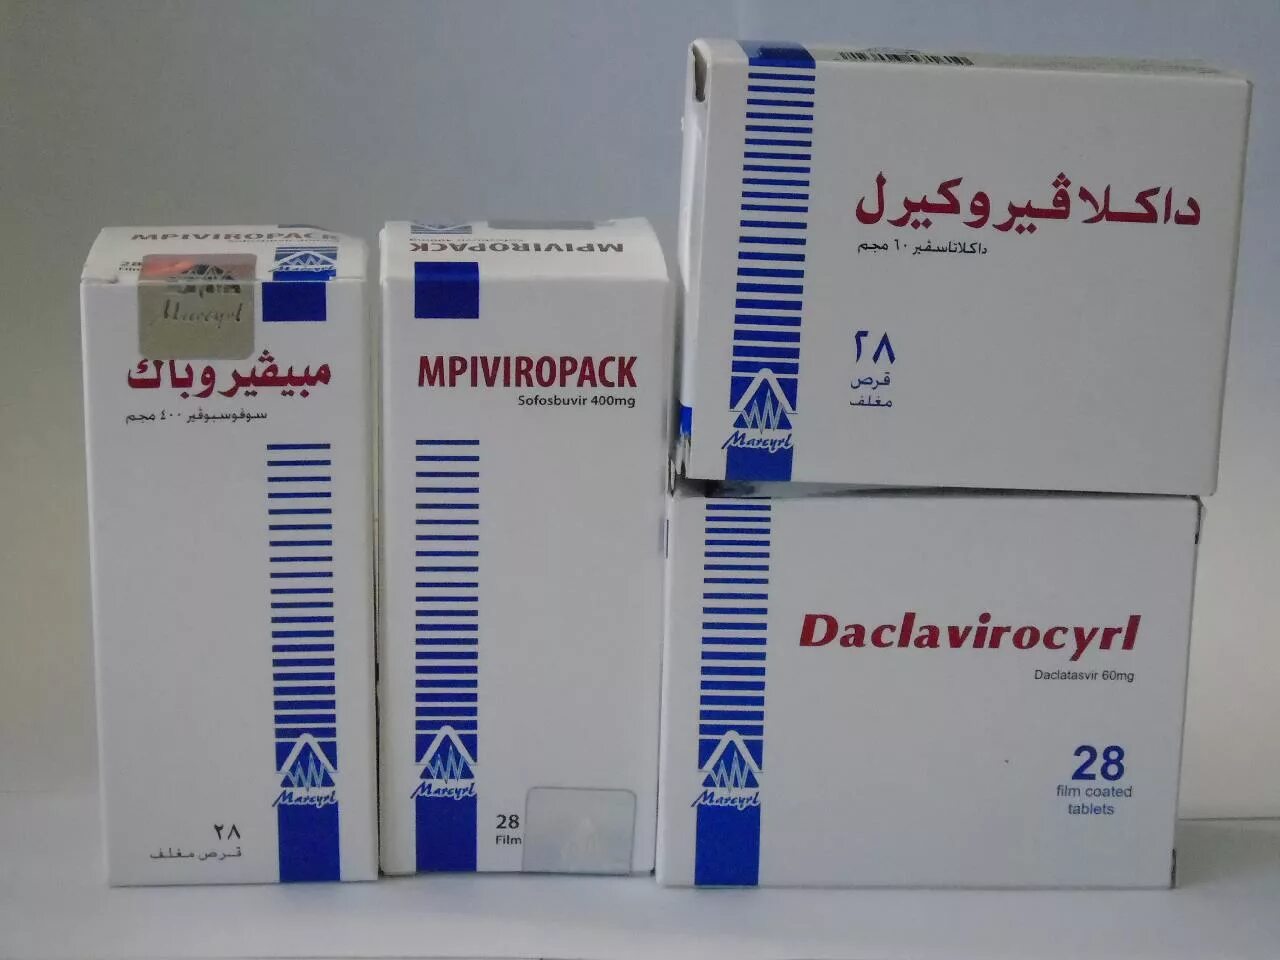 Софосбувир даклатасвир купить. Египетские таблетки от гепатита с софосбувир и Даклатасвир. Препараты Египет софосбувир и Даклатасвир. Софосбувир MPIVIROPACK 400mg Индия. Лекарство MPIVIROPACK Sofosbuvir 400 MG Daclavirocyrl.